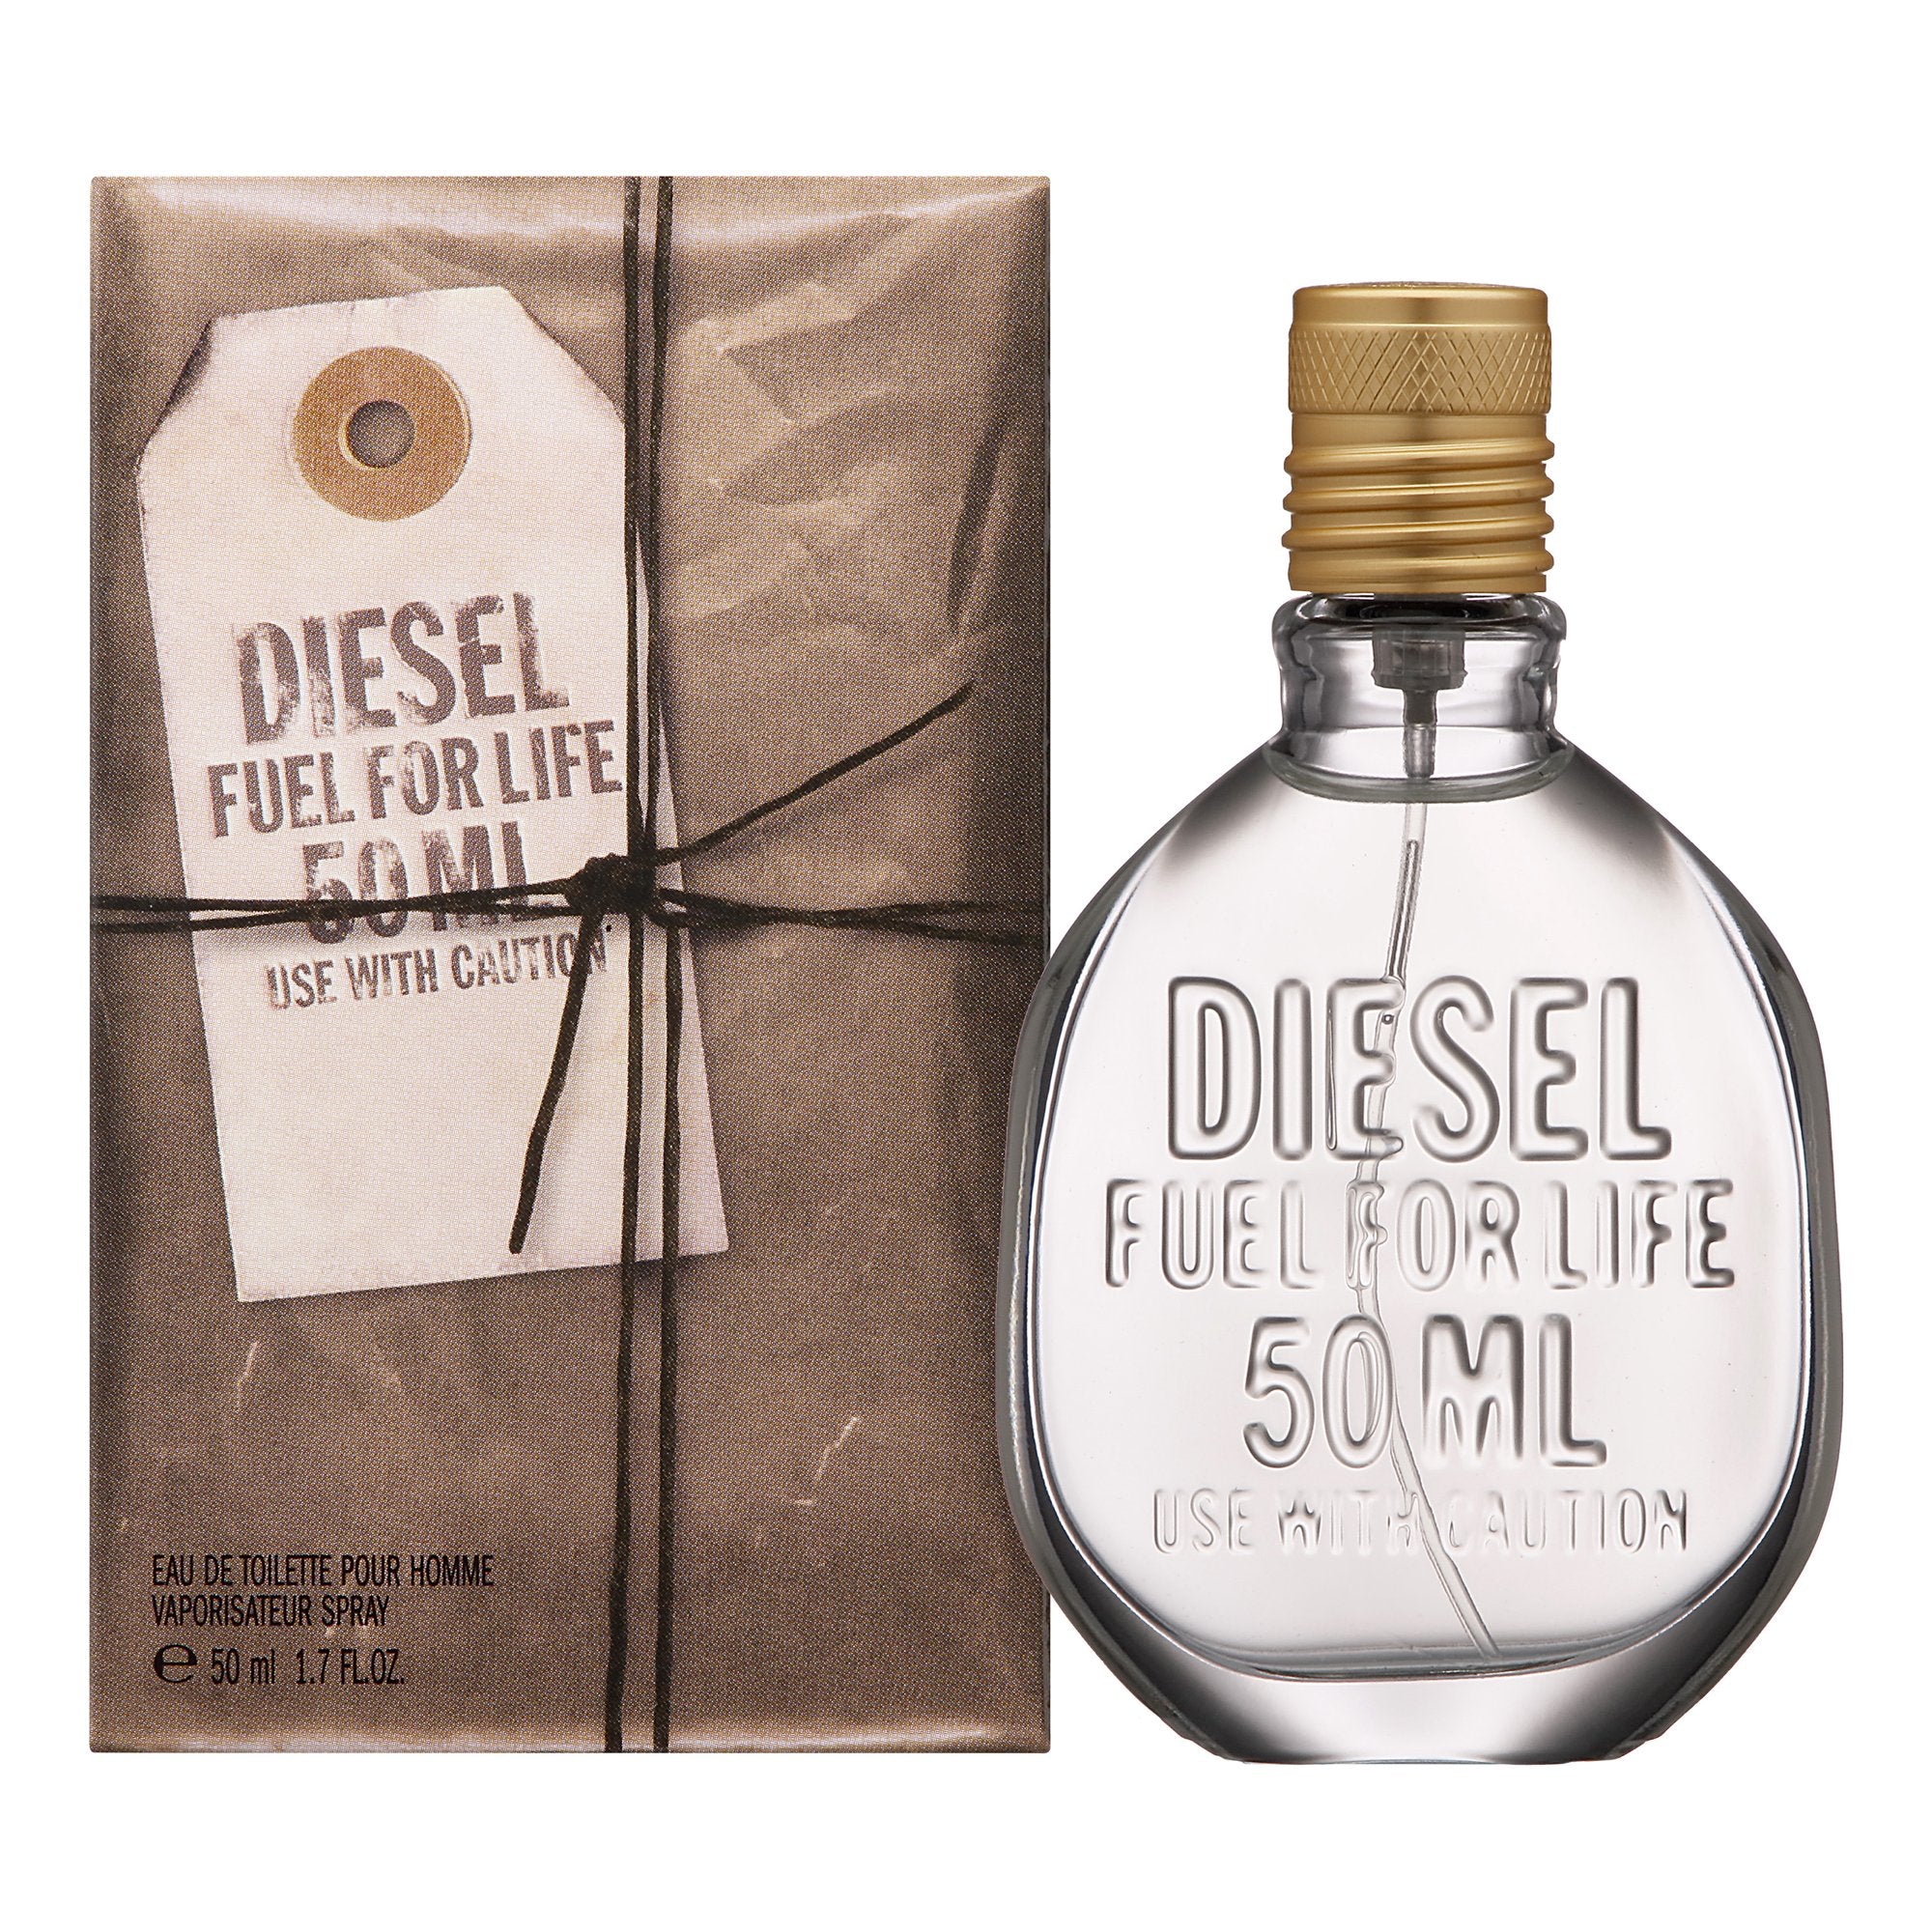 Diesel Fuel For Life Eau De Toilette Spray 1.7oz / 50 ml